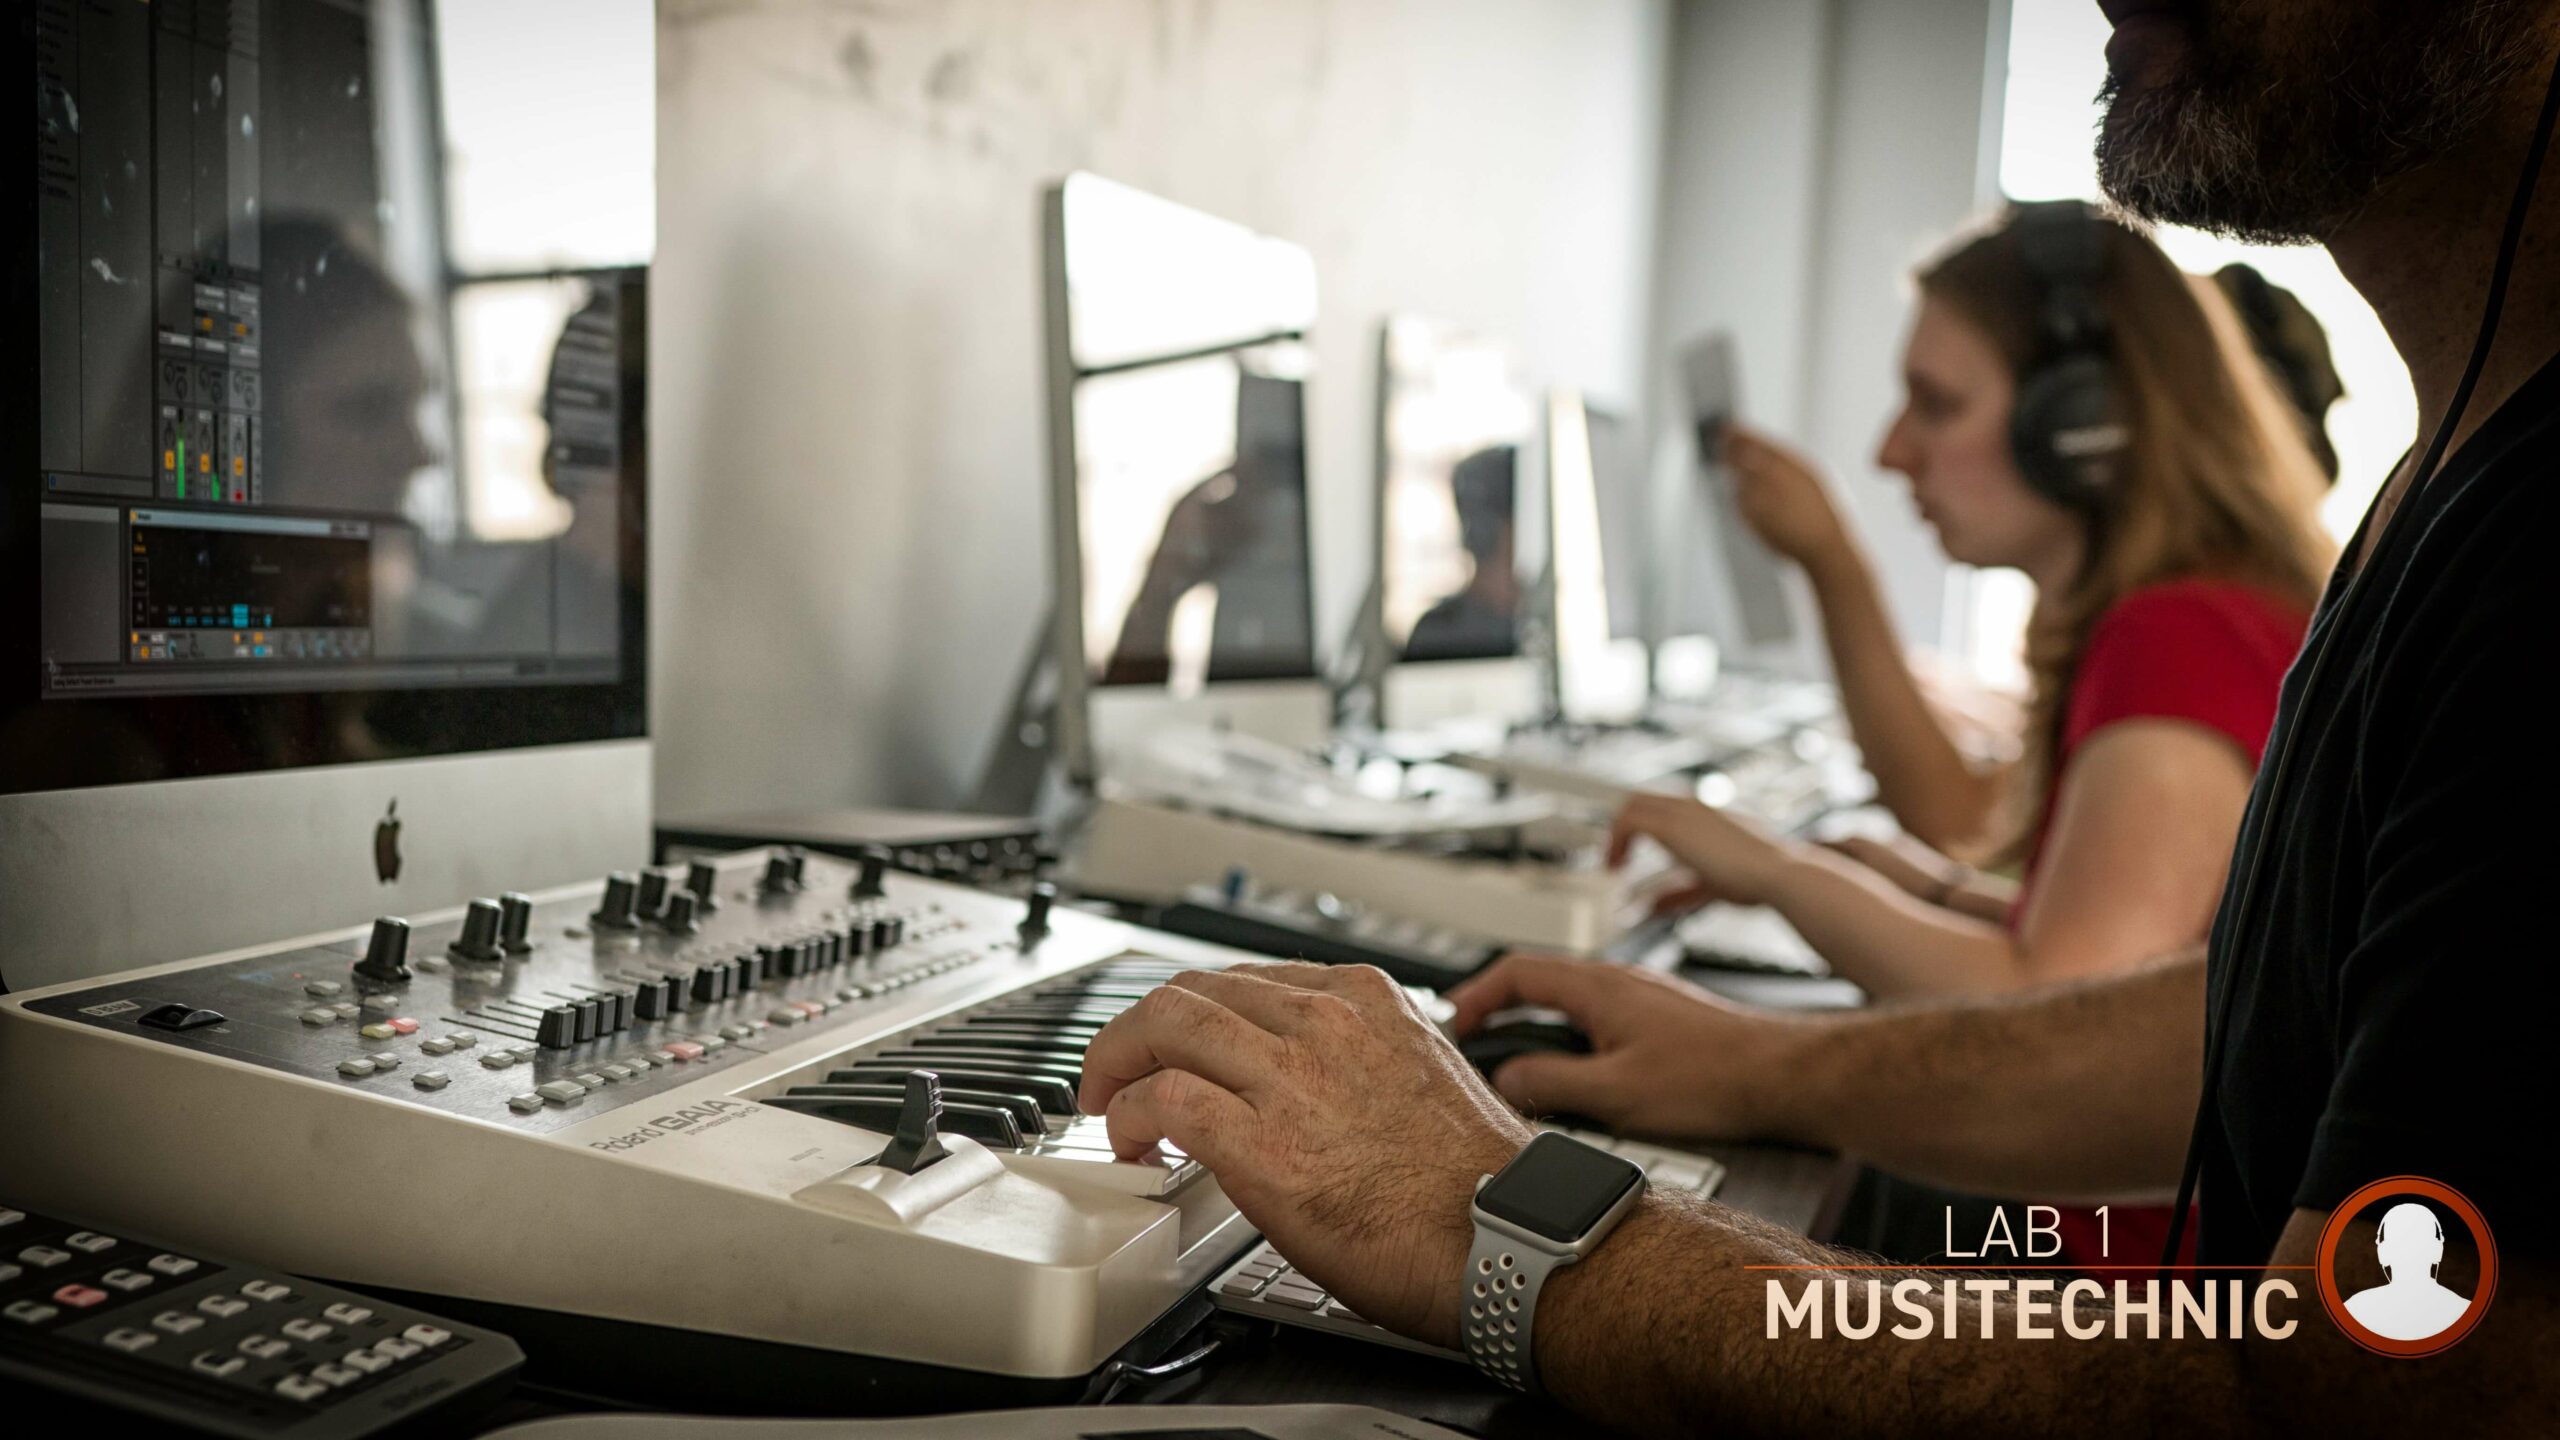 Lab 1 Musitechnic - audio practice